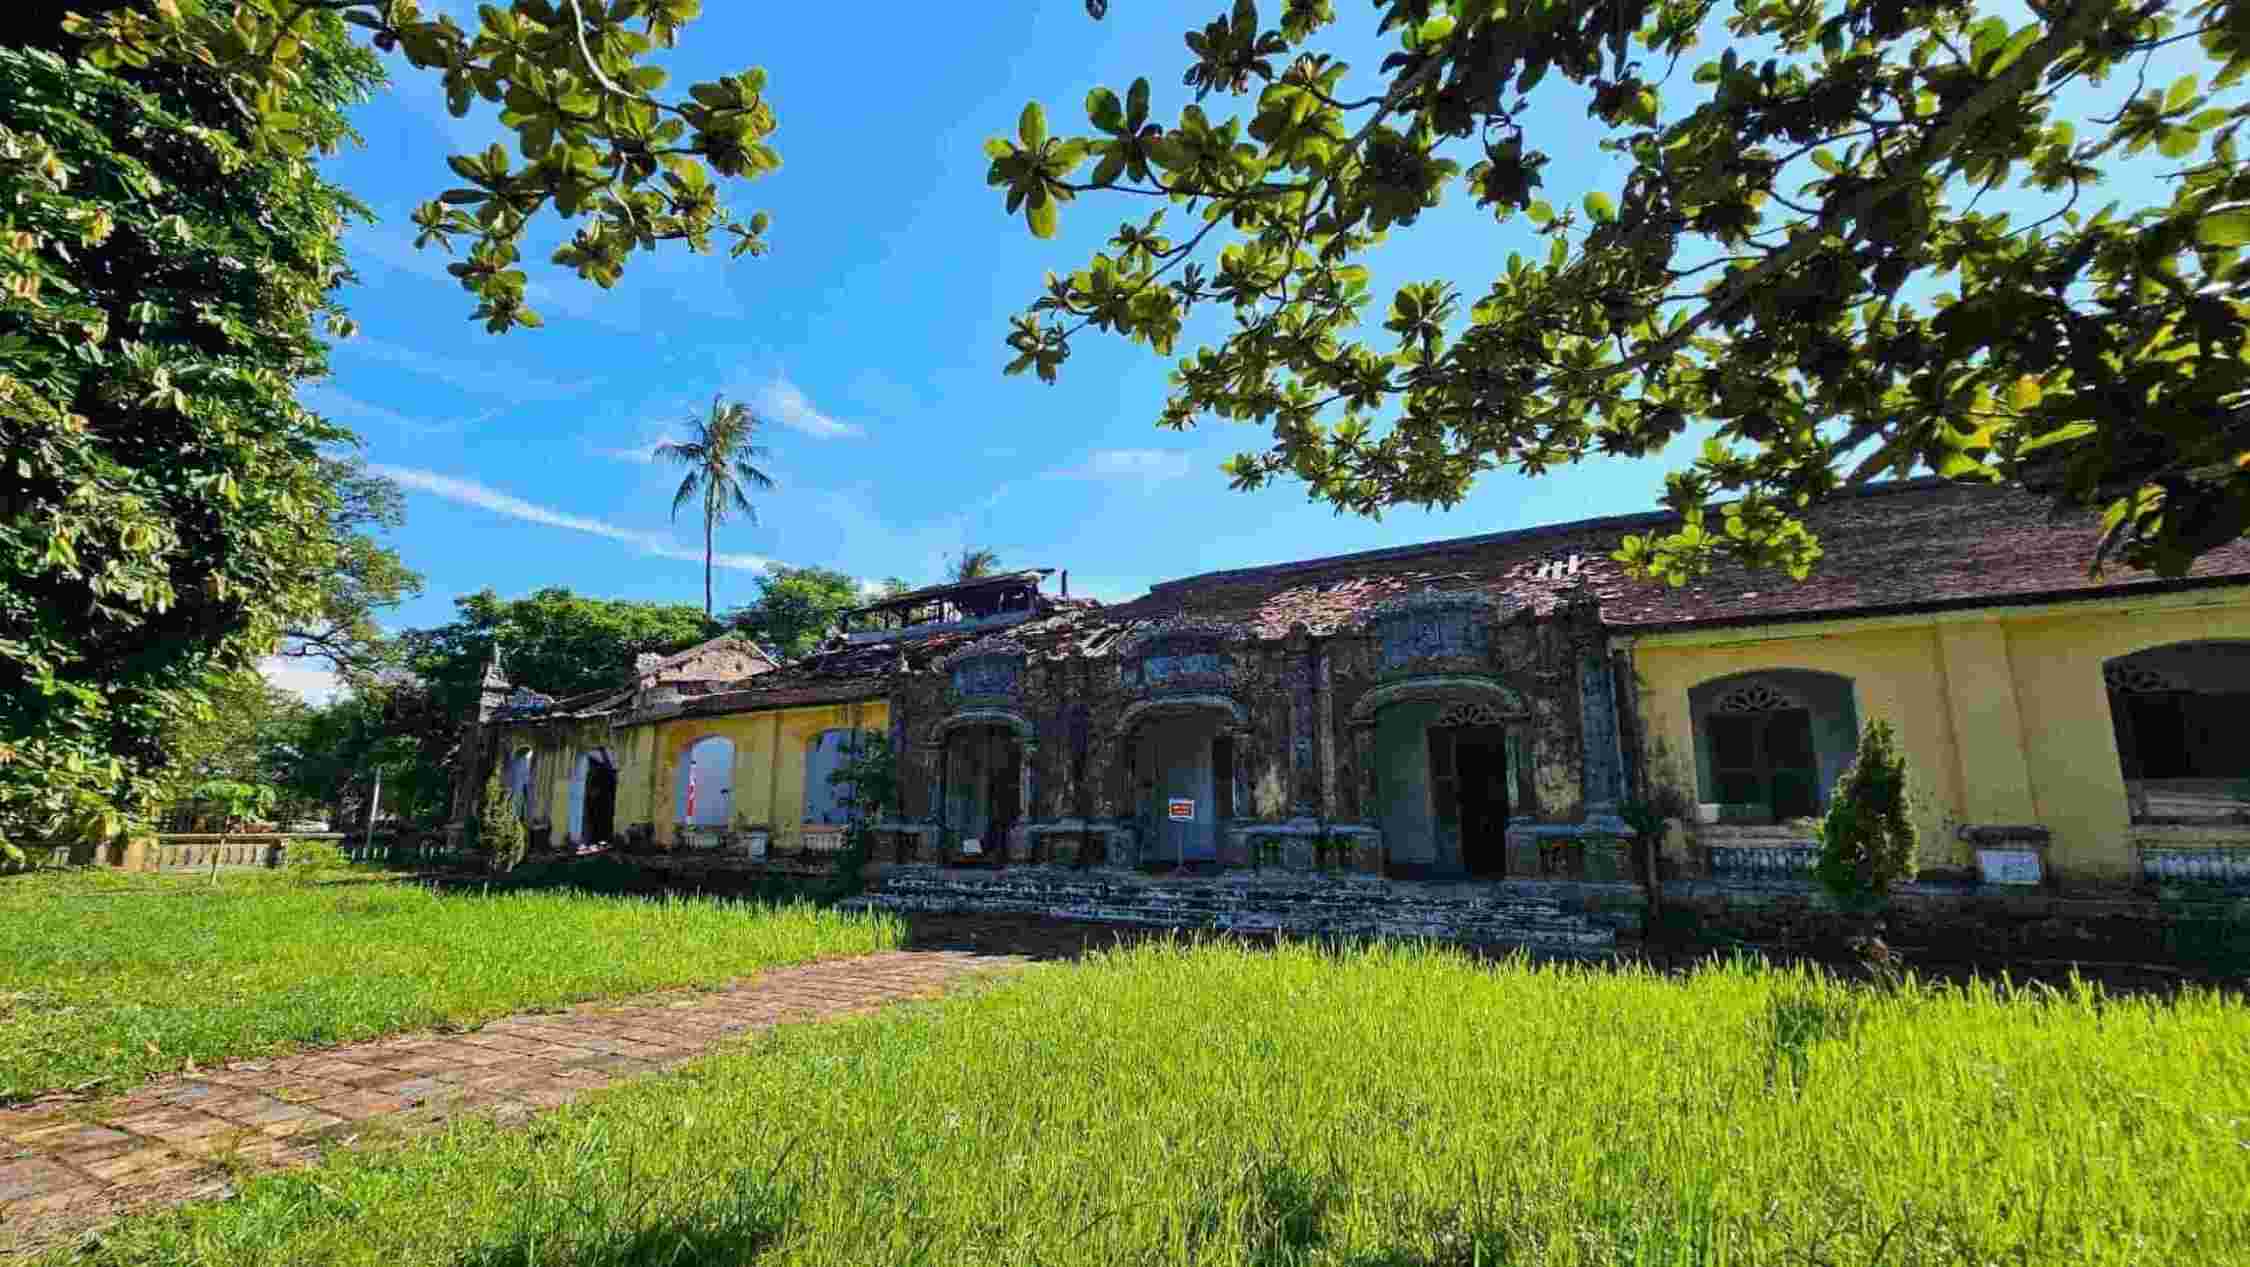 Nằm trong khuôn viên của di tích Quốc Tử Giám tại số 1 đường 23 tháng 8 (P. Đông Ba, TP. Huế), Bảo tàng Lịch sử Thừa Thiên Huế là di tích trường đại học duy nhất thời Nguyễn còn tồn tại ở Việt Nam. 